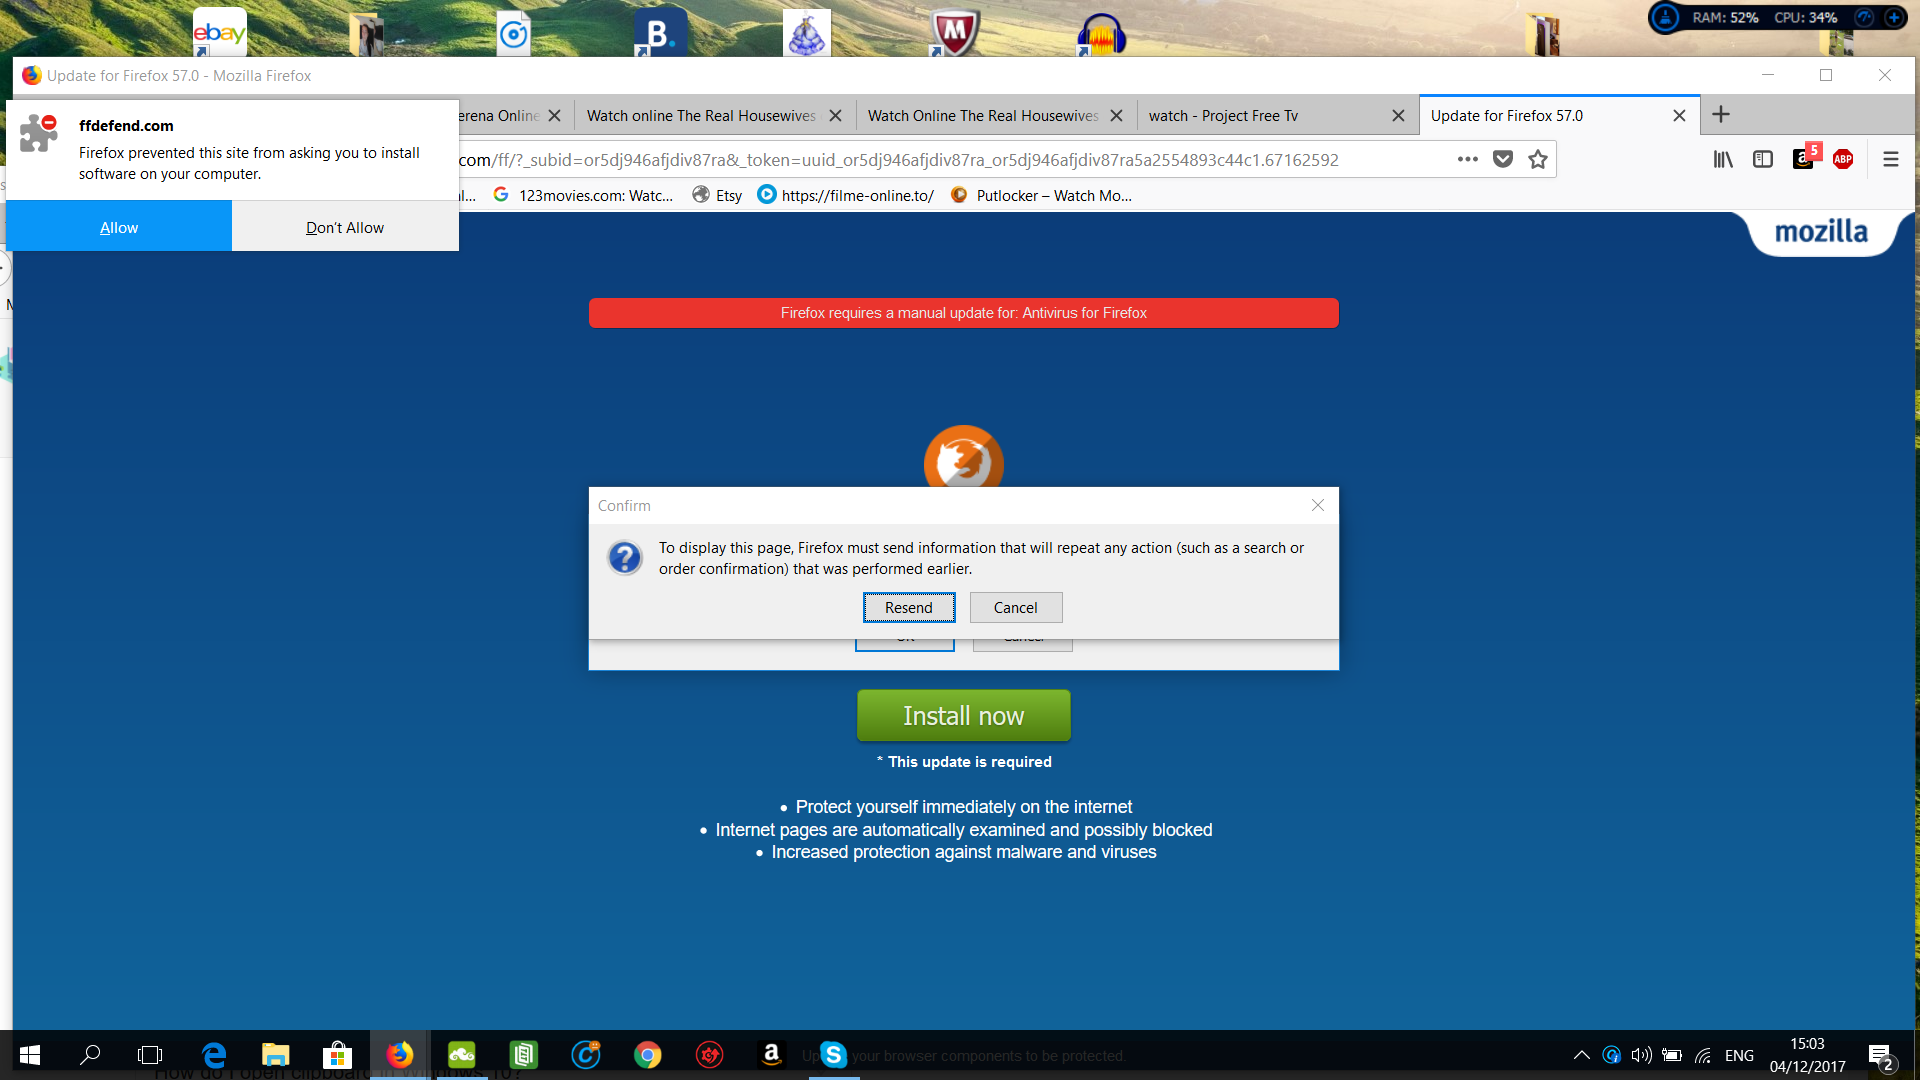 Hvordan sjekker jeg Firefox for skadelig programvare?